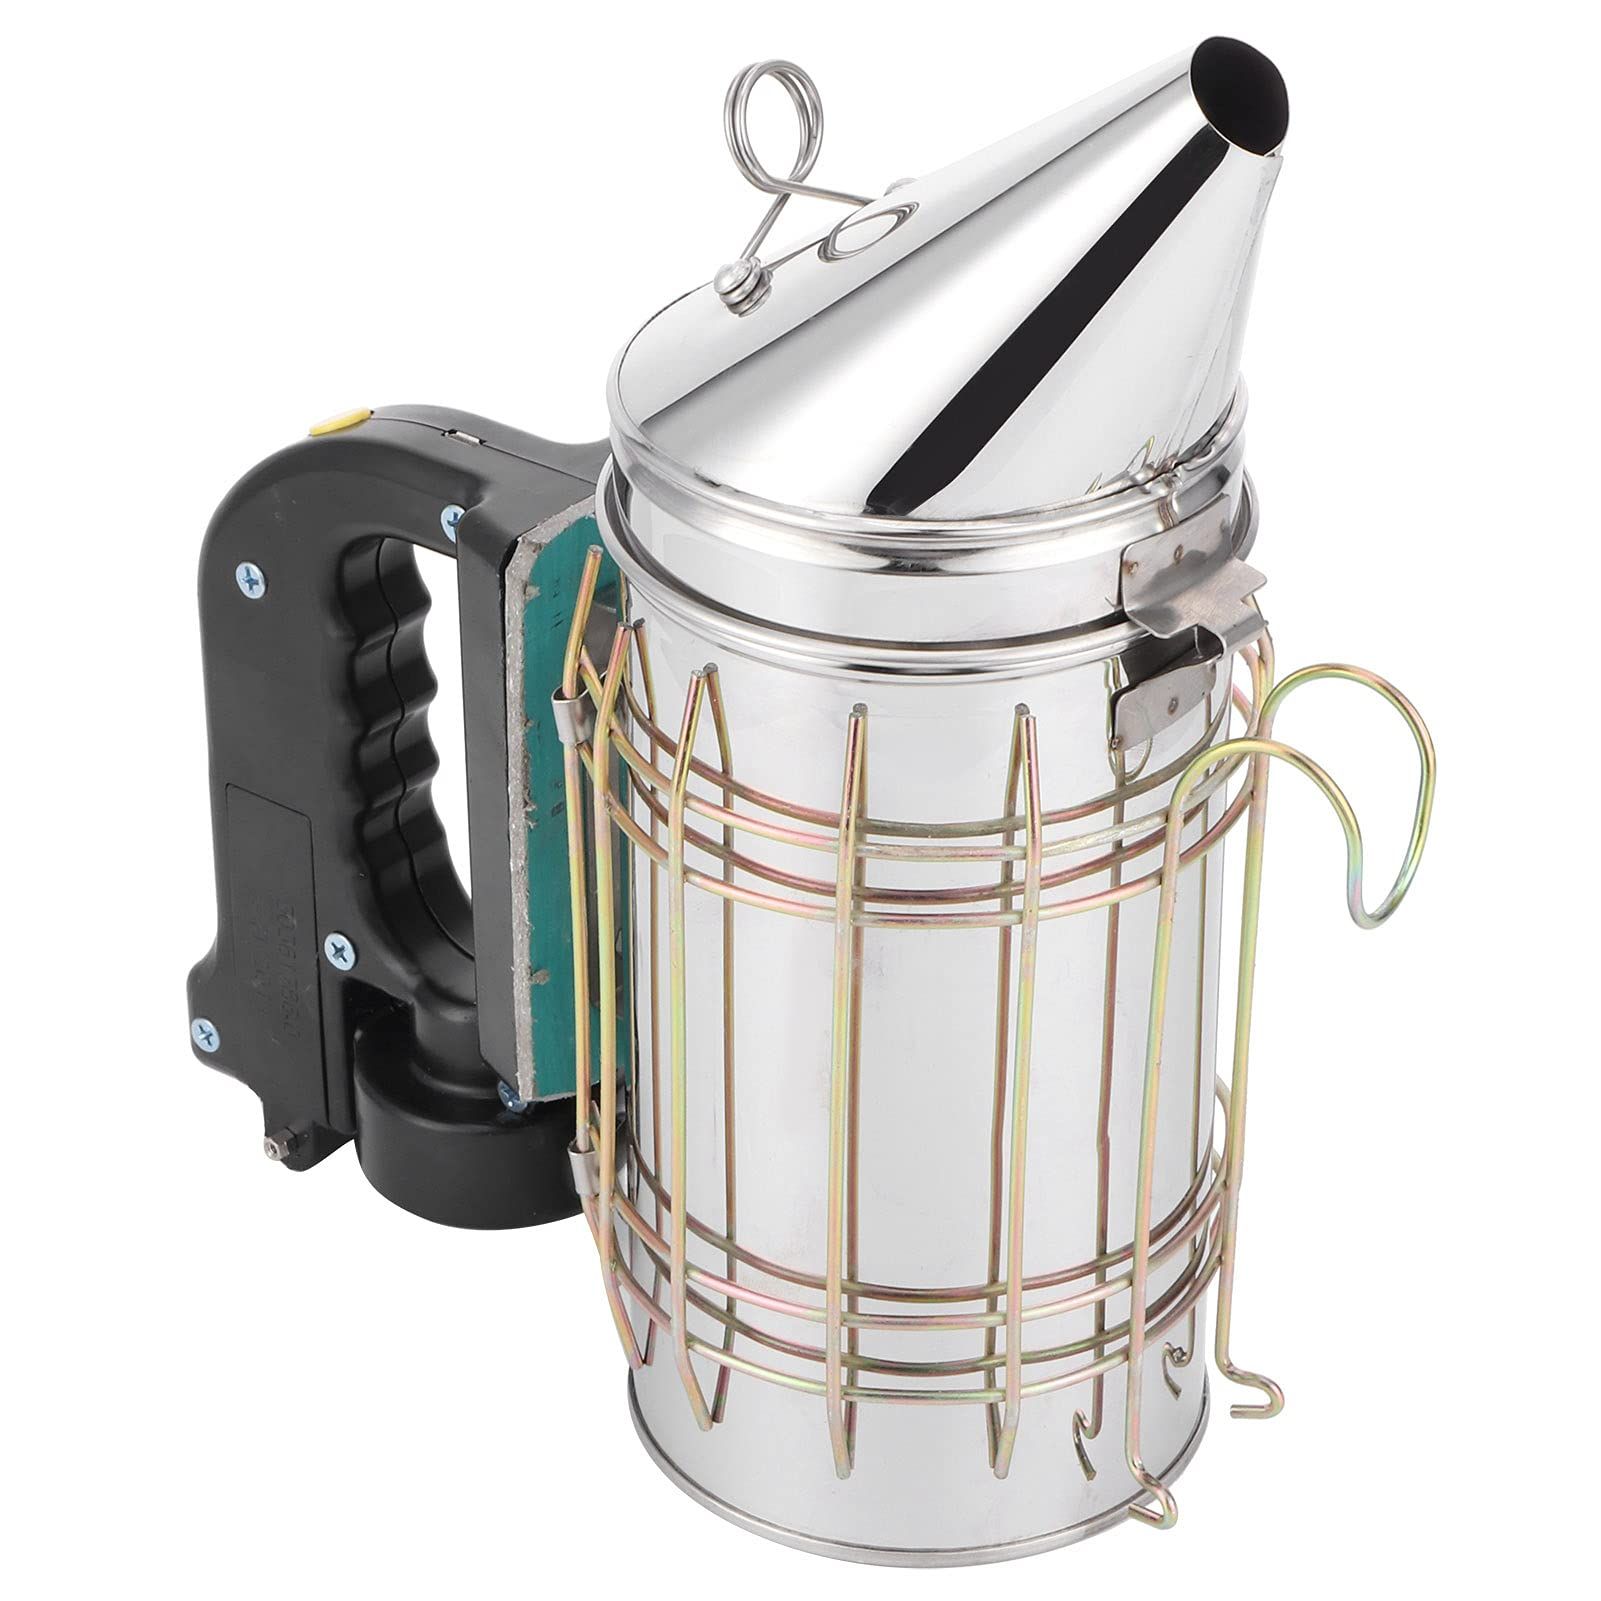 燻煙器 養蜂スモーカー 噴霧器 5 電動式 使いやすい ブラック ステンレス製 安全 養蜂器具